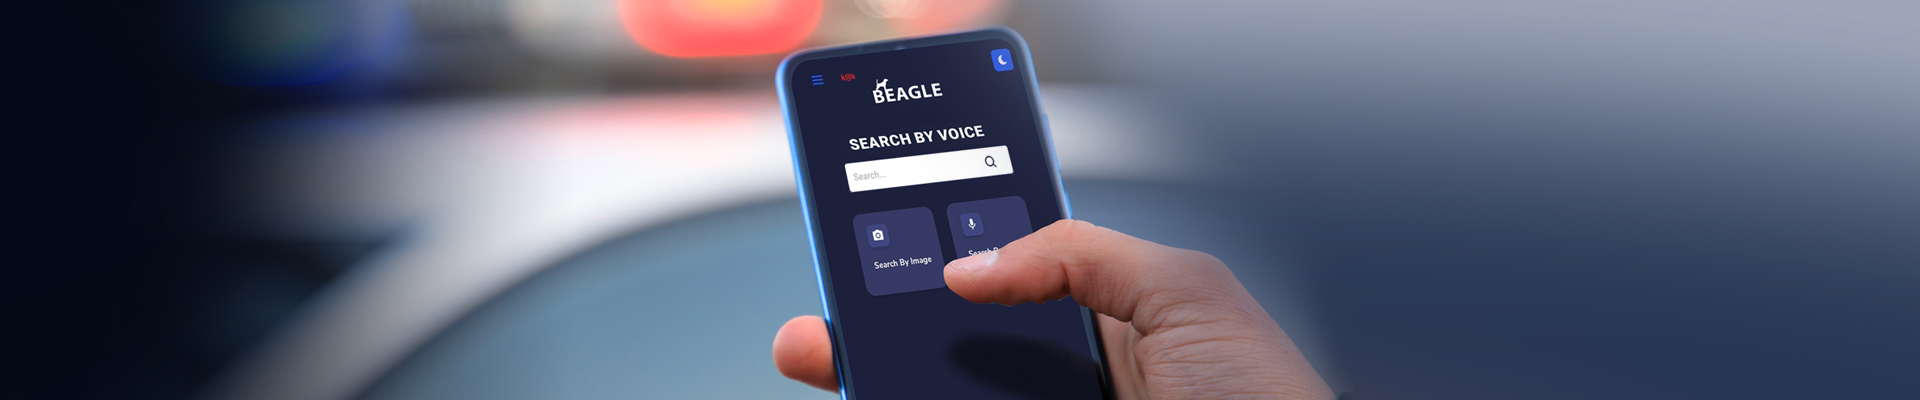 Beagle Voice Assitant helps Law enforcement